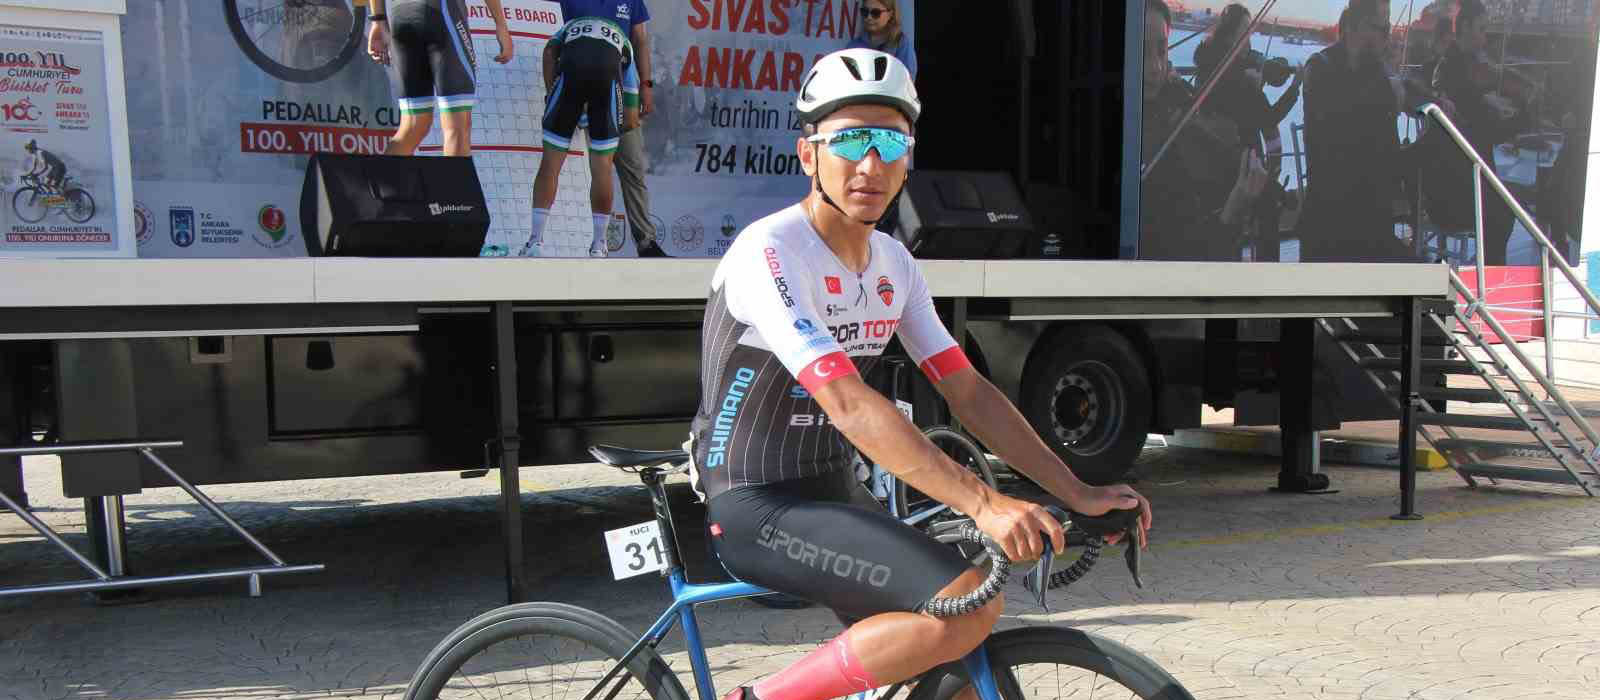 Konyalı Milli bisikletçi Örken'in hedefi 3. olimpiyat